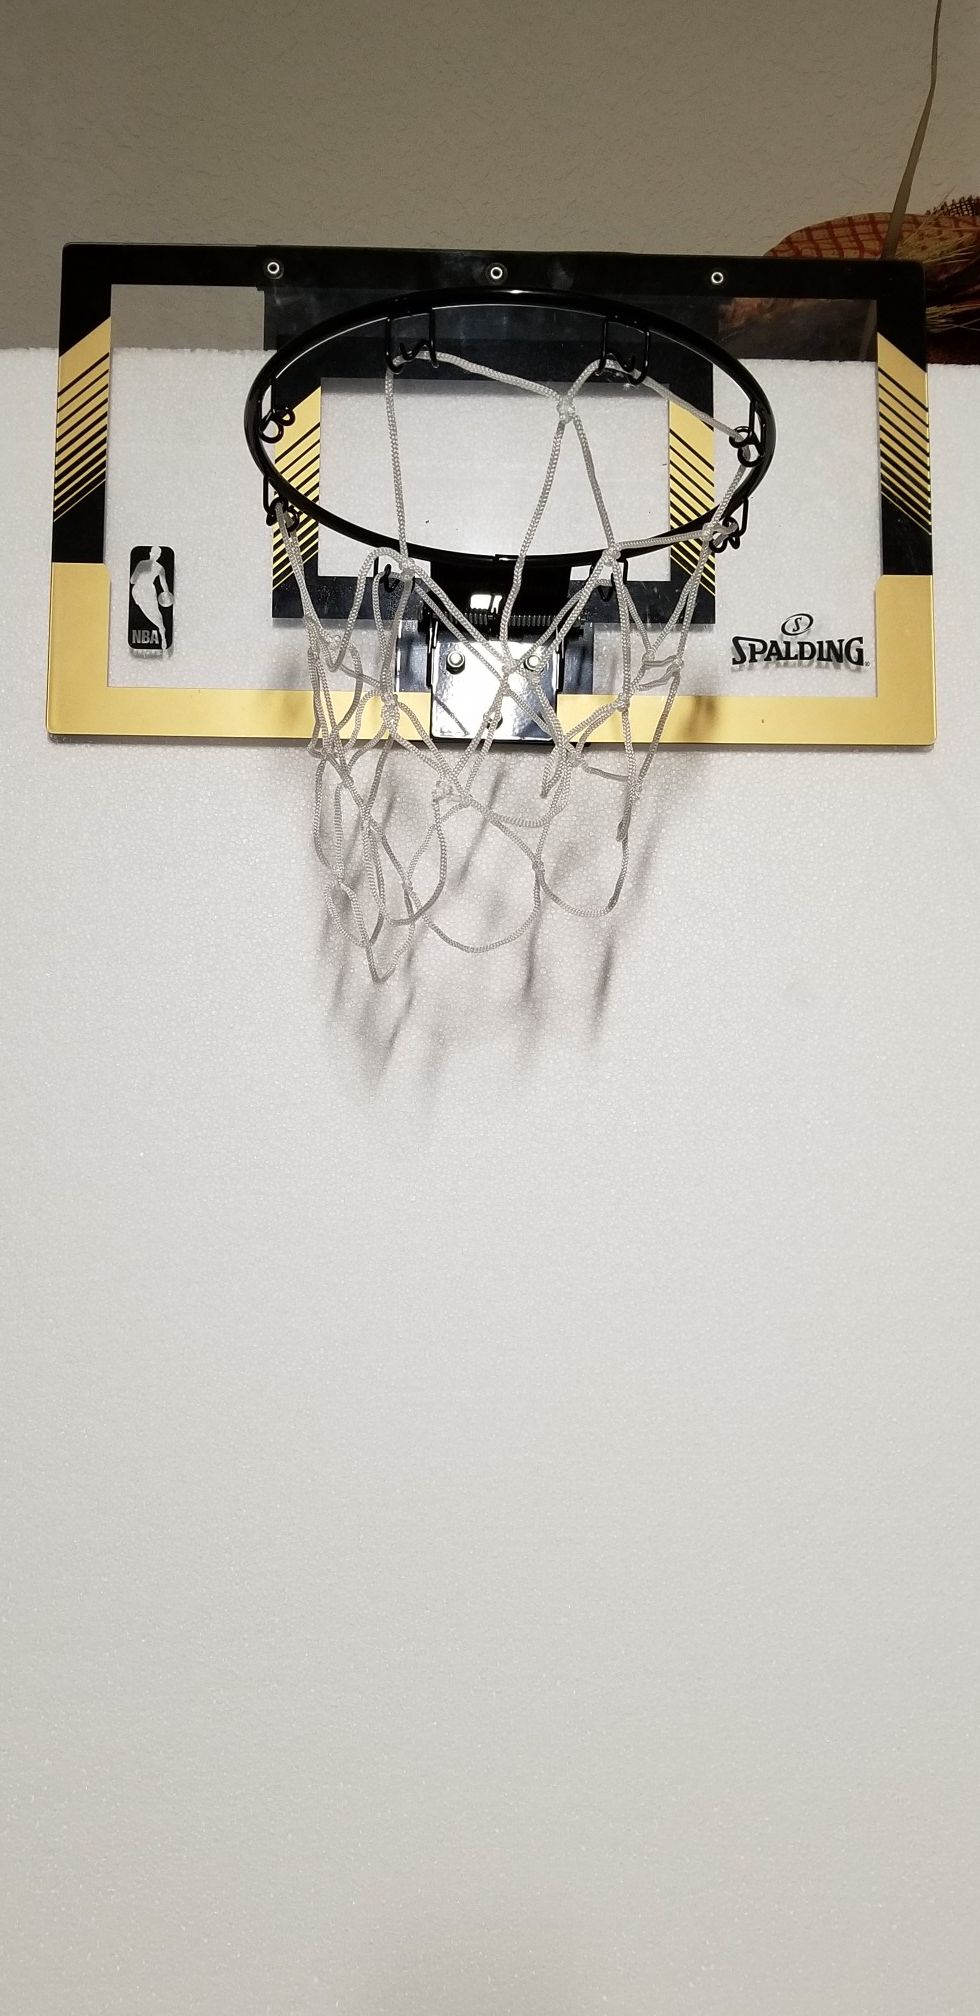 Over the door basketball hoop